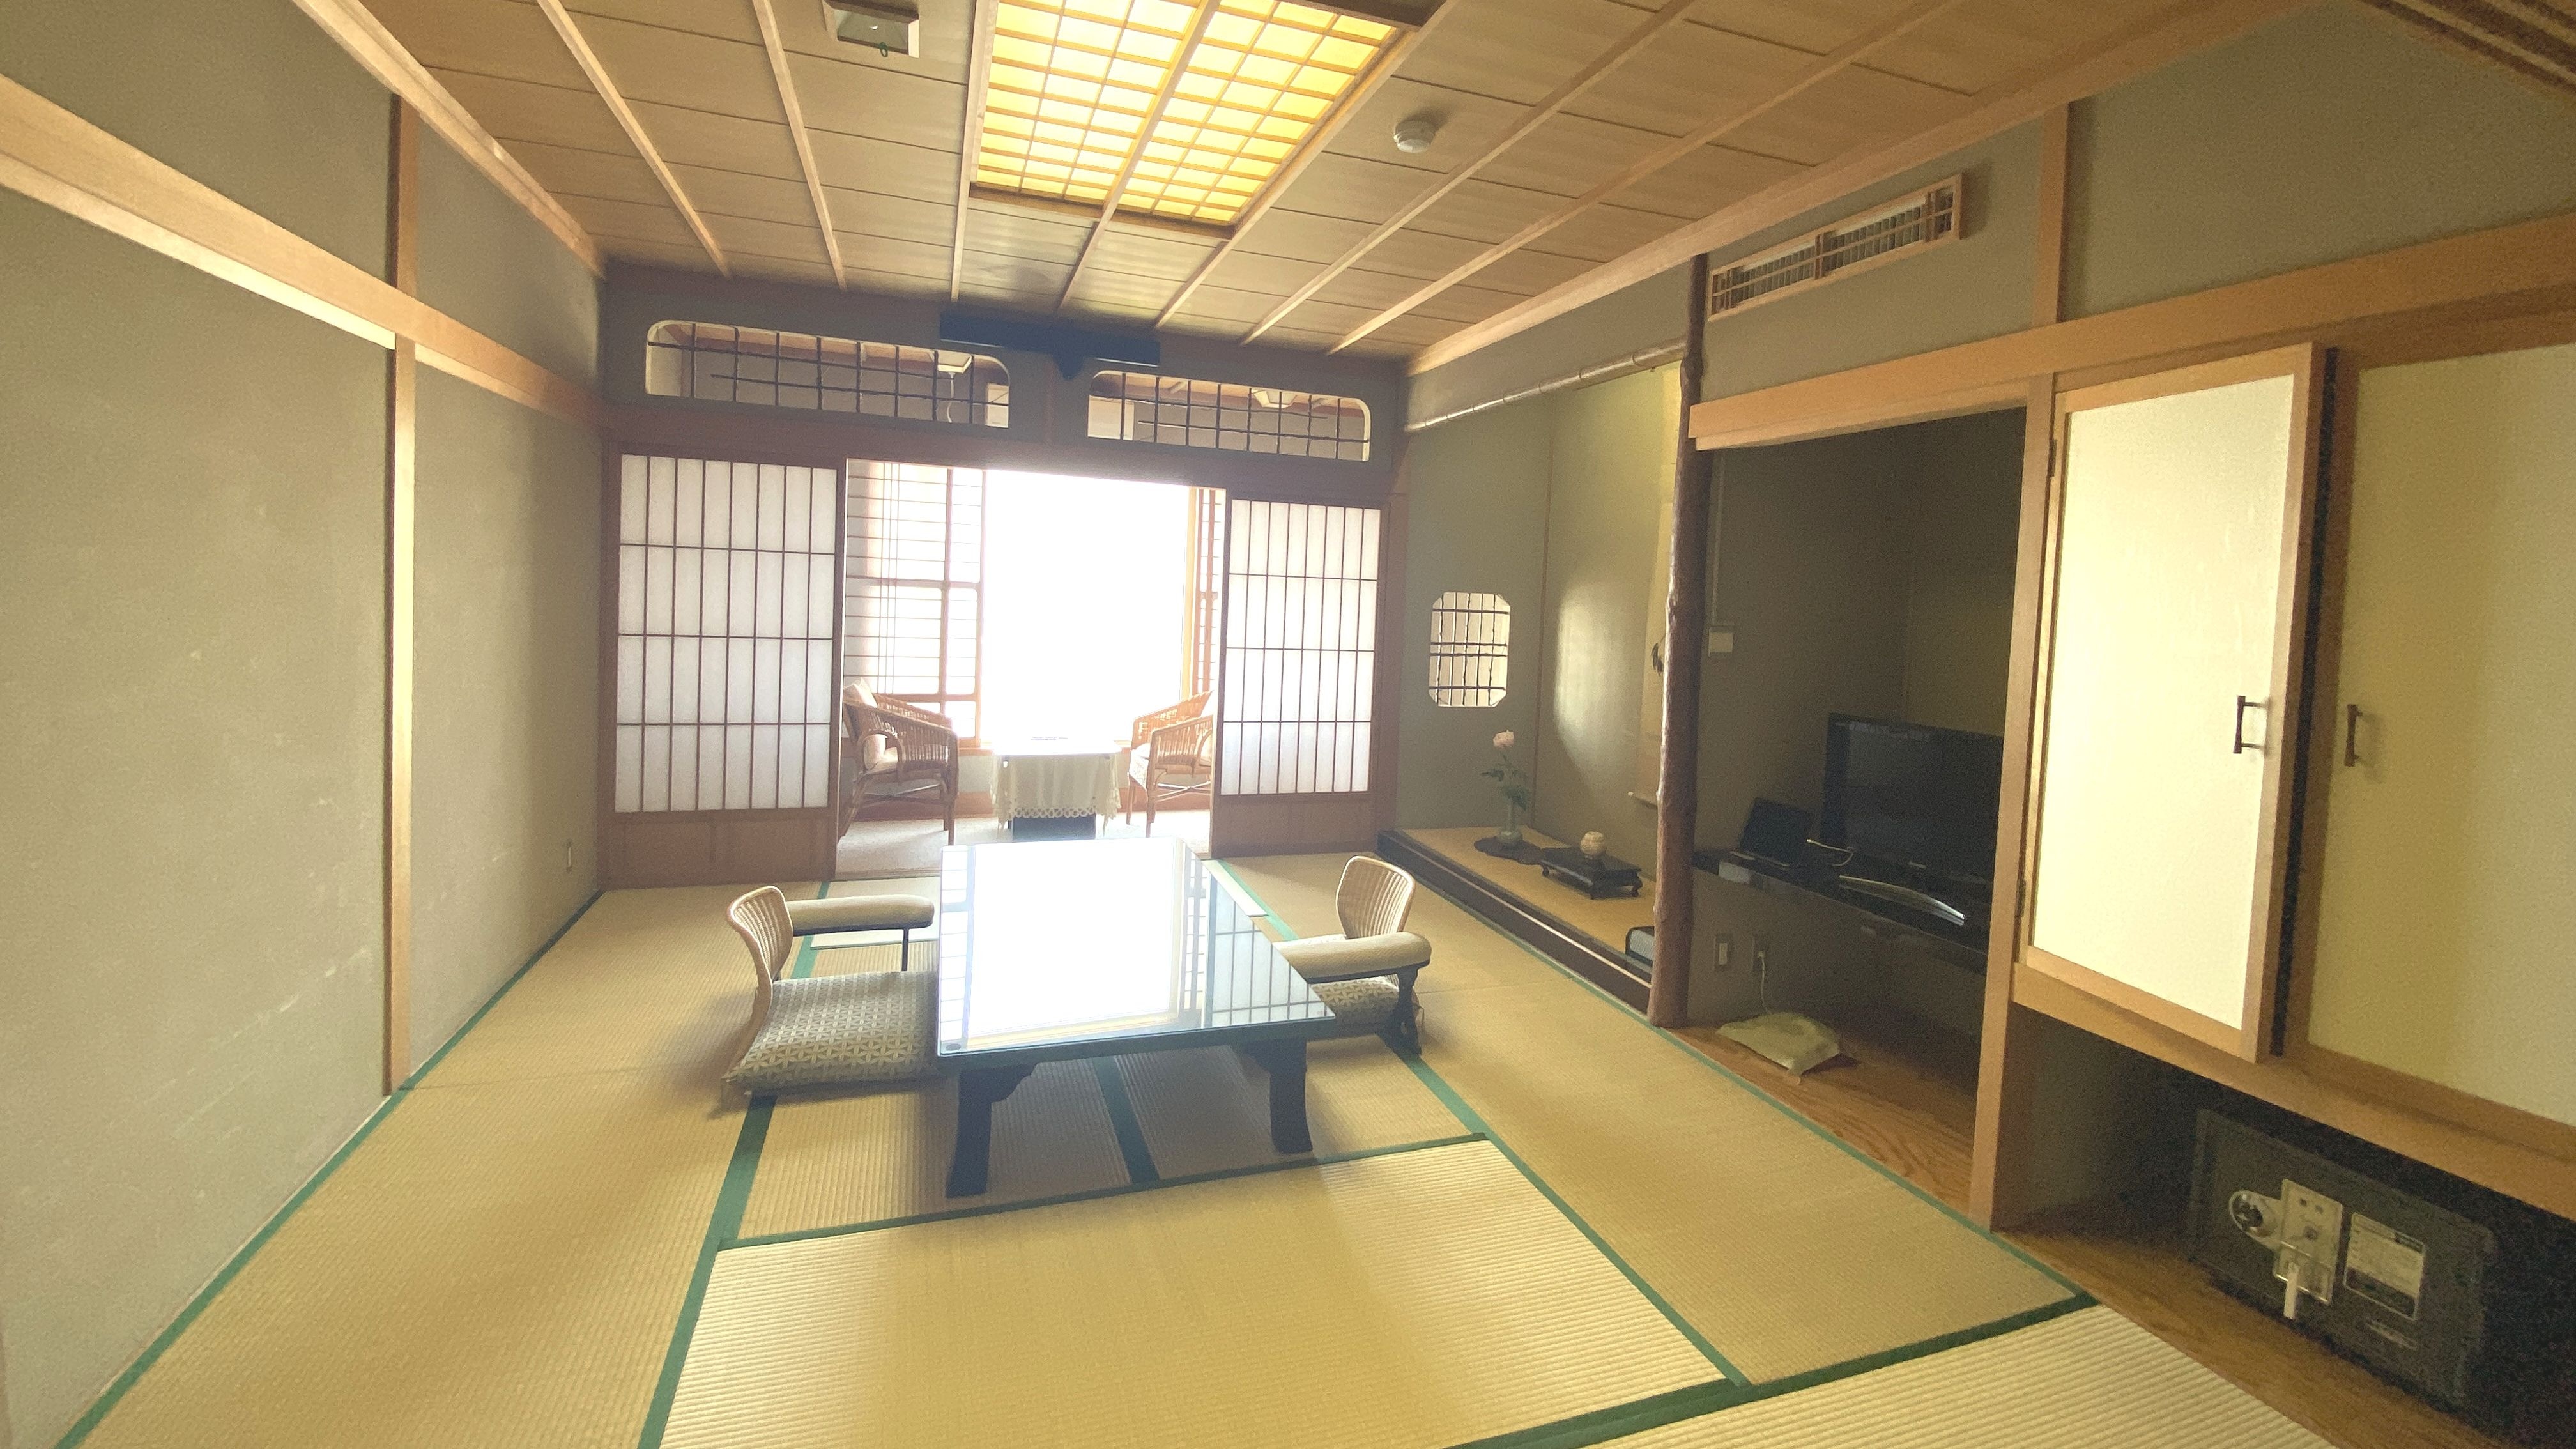 [อาคารหลัก] ห้องสไตล์ญี่ปุ่น 2 ห้อง